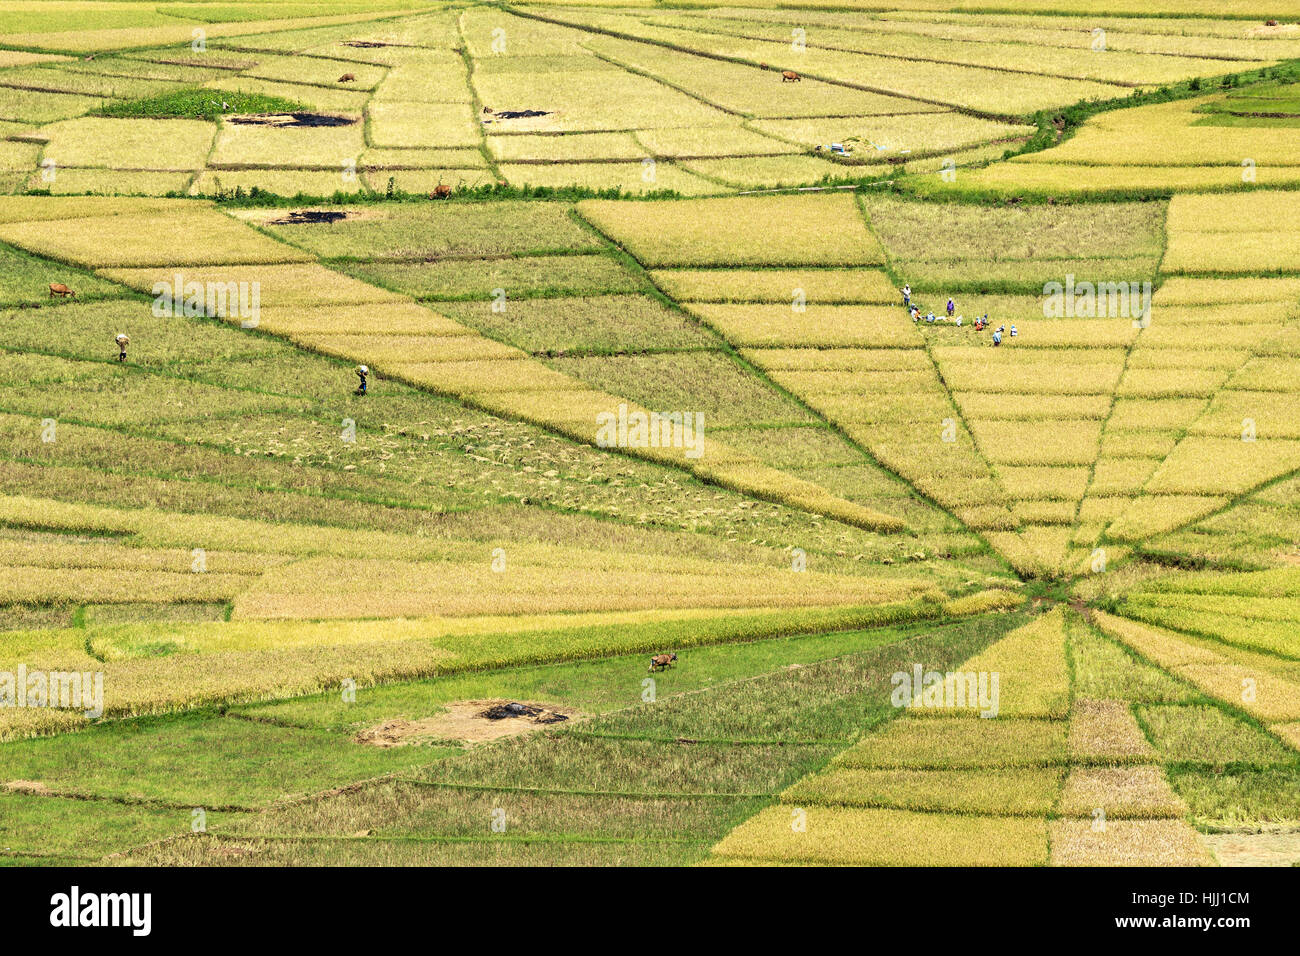 Indonesia, Nusa Tenggara Timur, ricefields Stock Photo